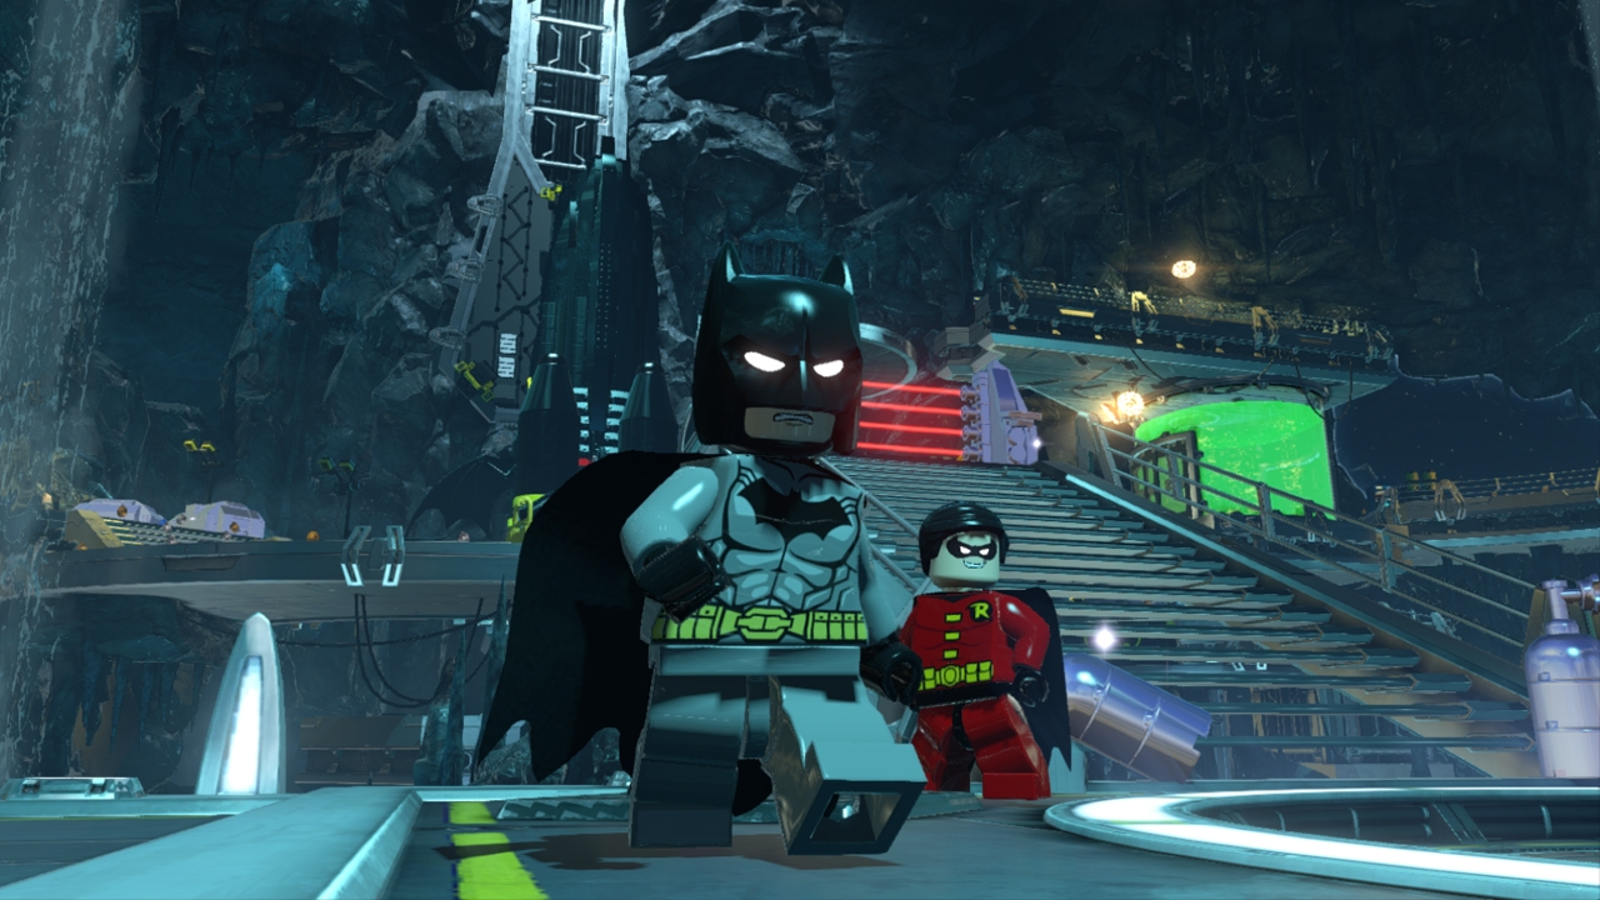 Wot I Think: Lego Batman 2: DC Super Heroes